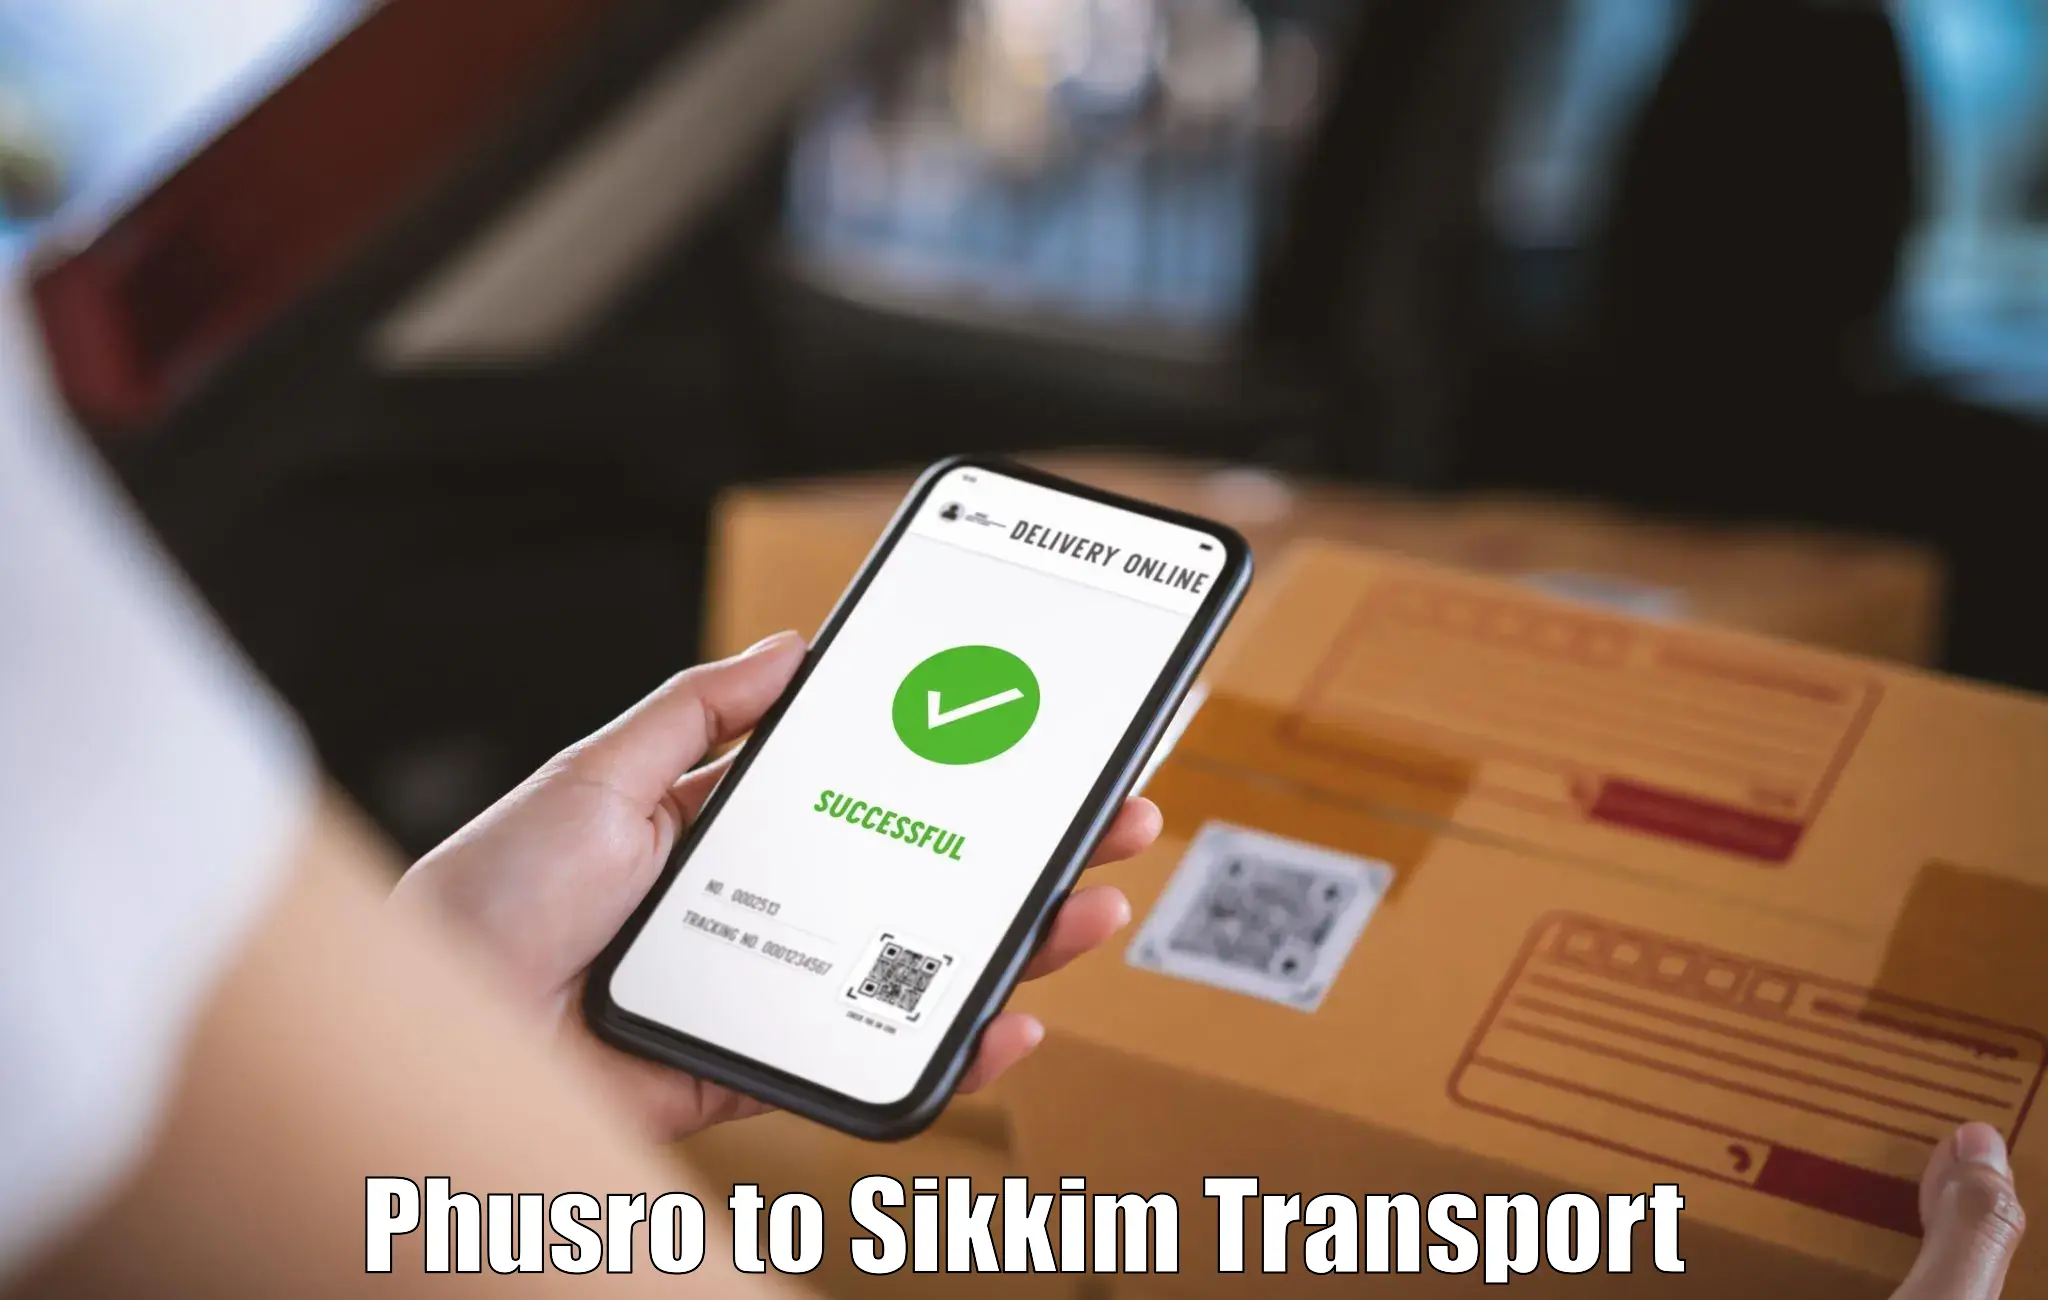 Bike transport service Phusro to Sikkim